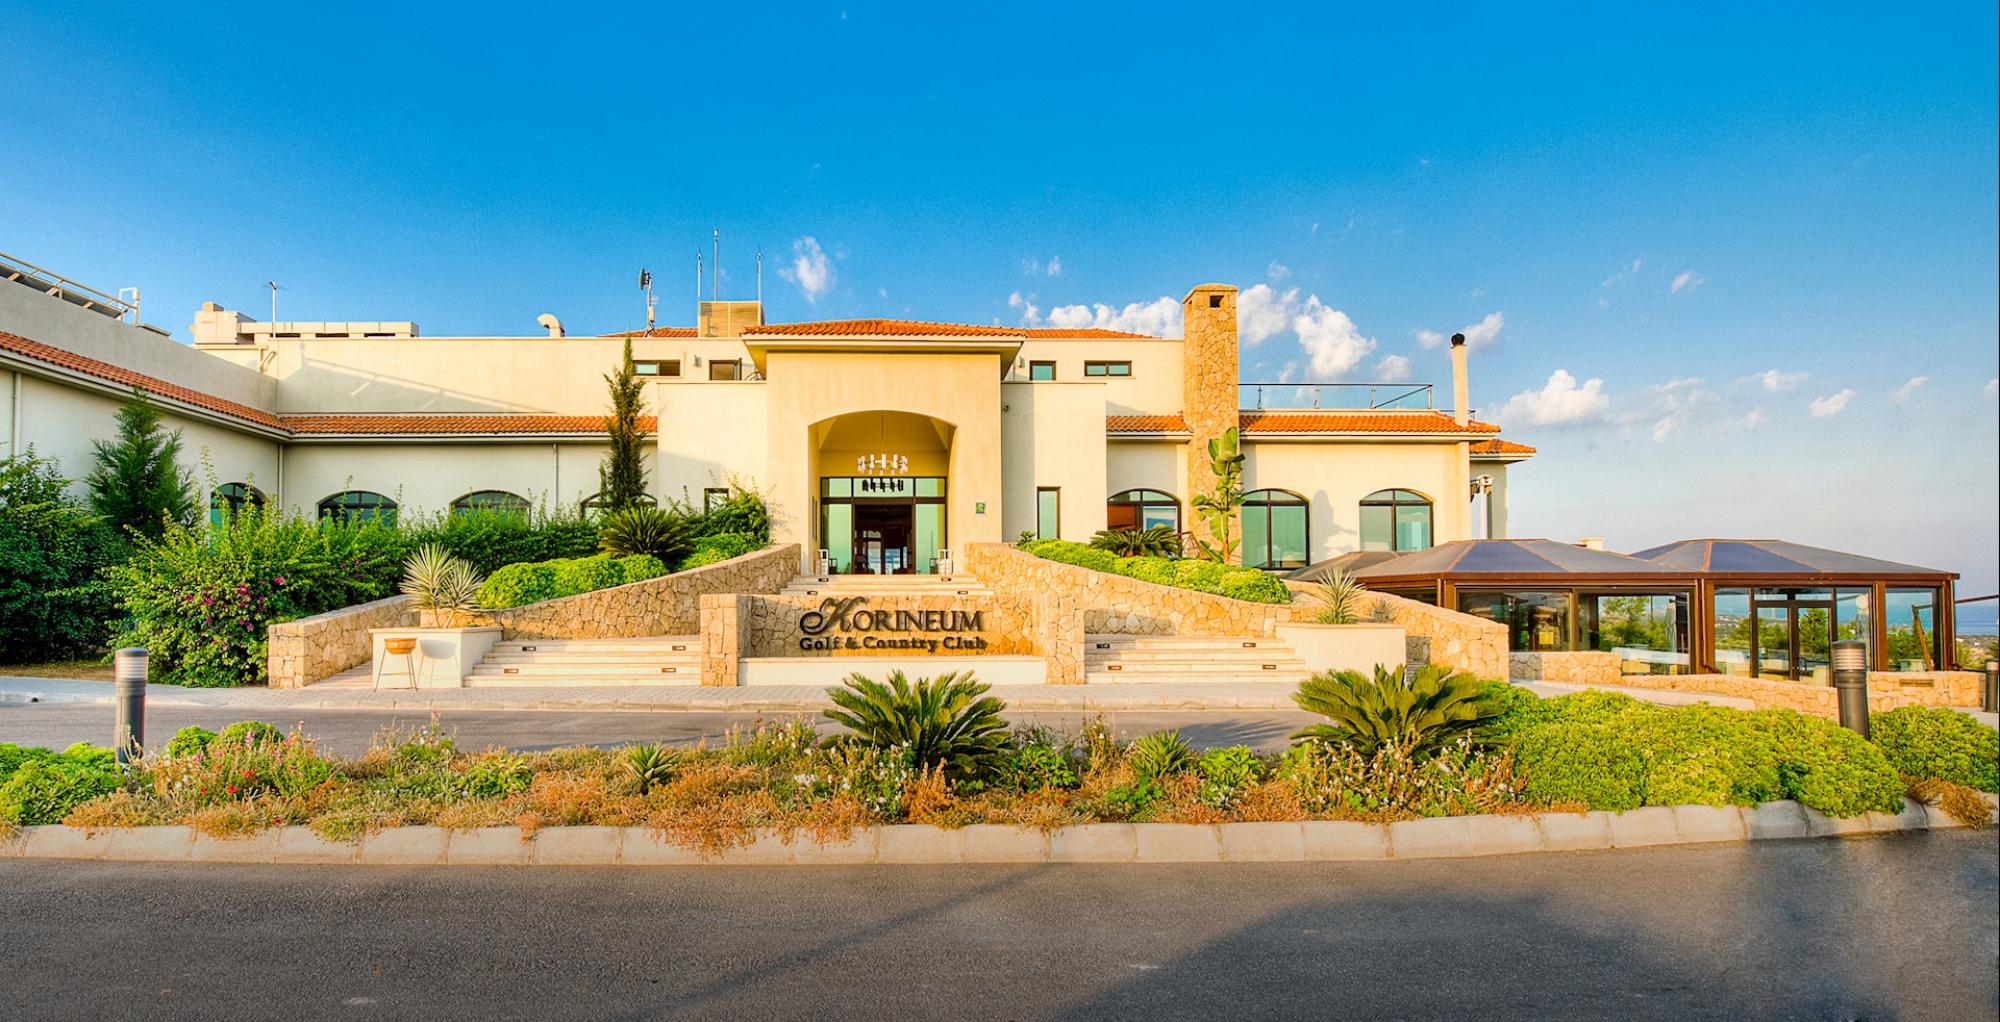 View Korineum Golf  Beach Resort's beautiful hotel within stunning Northern Cyprus.